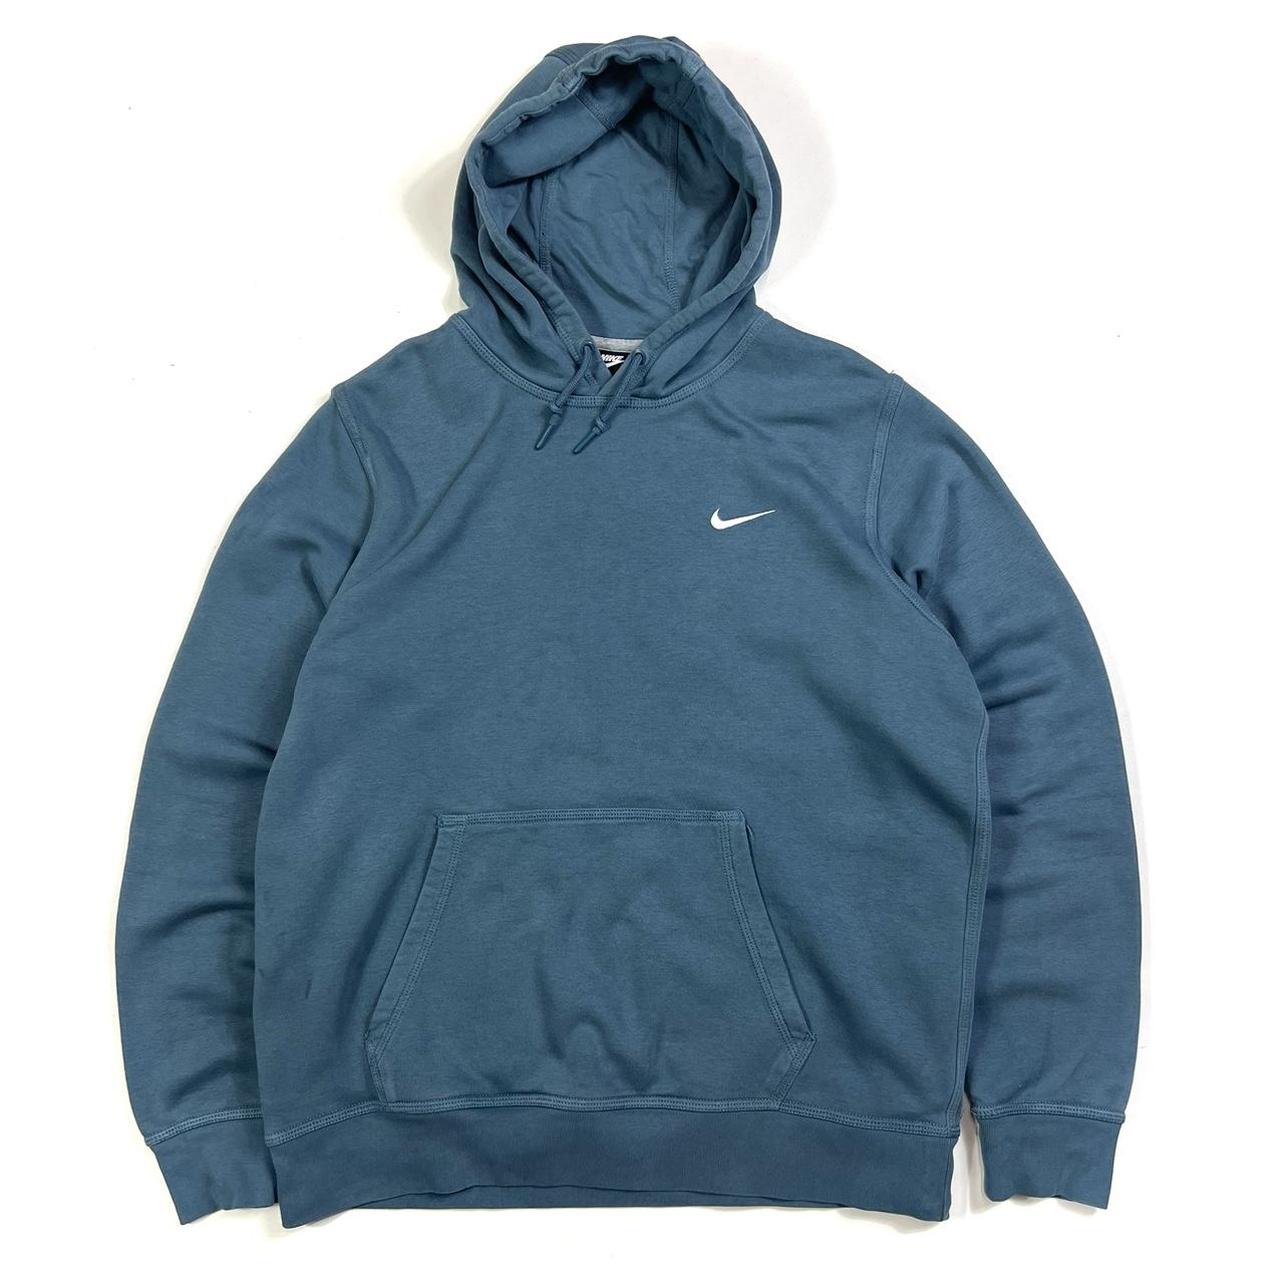 Nike swoosh embroidered essential hoodie P2P - 24... - Depop